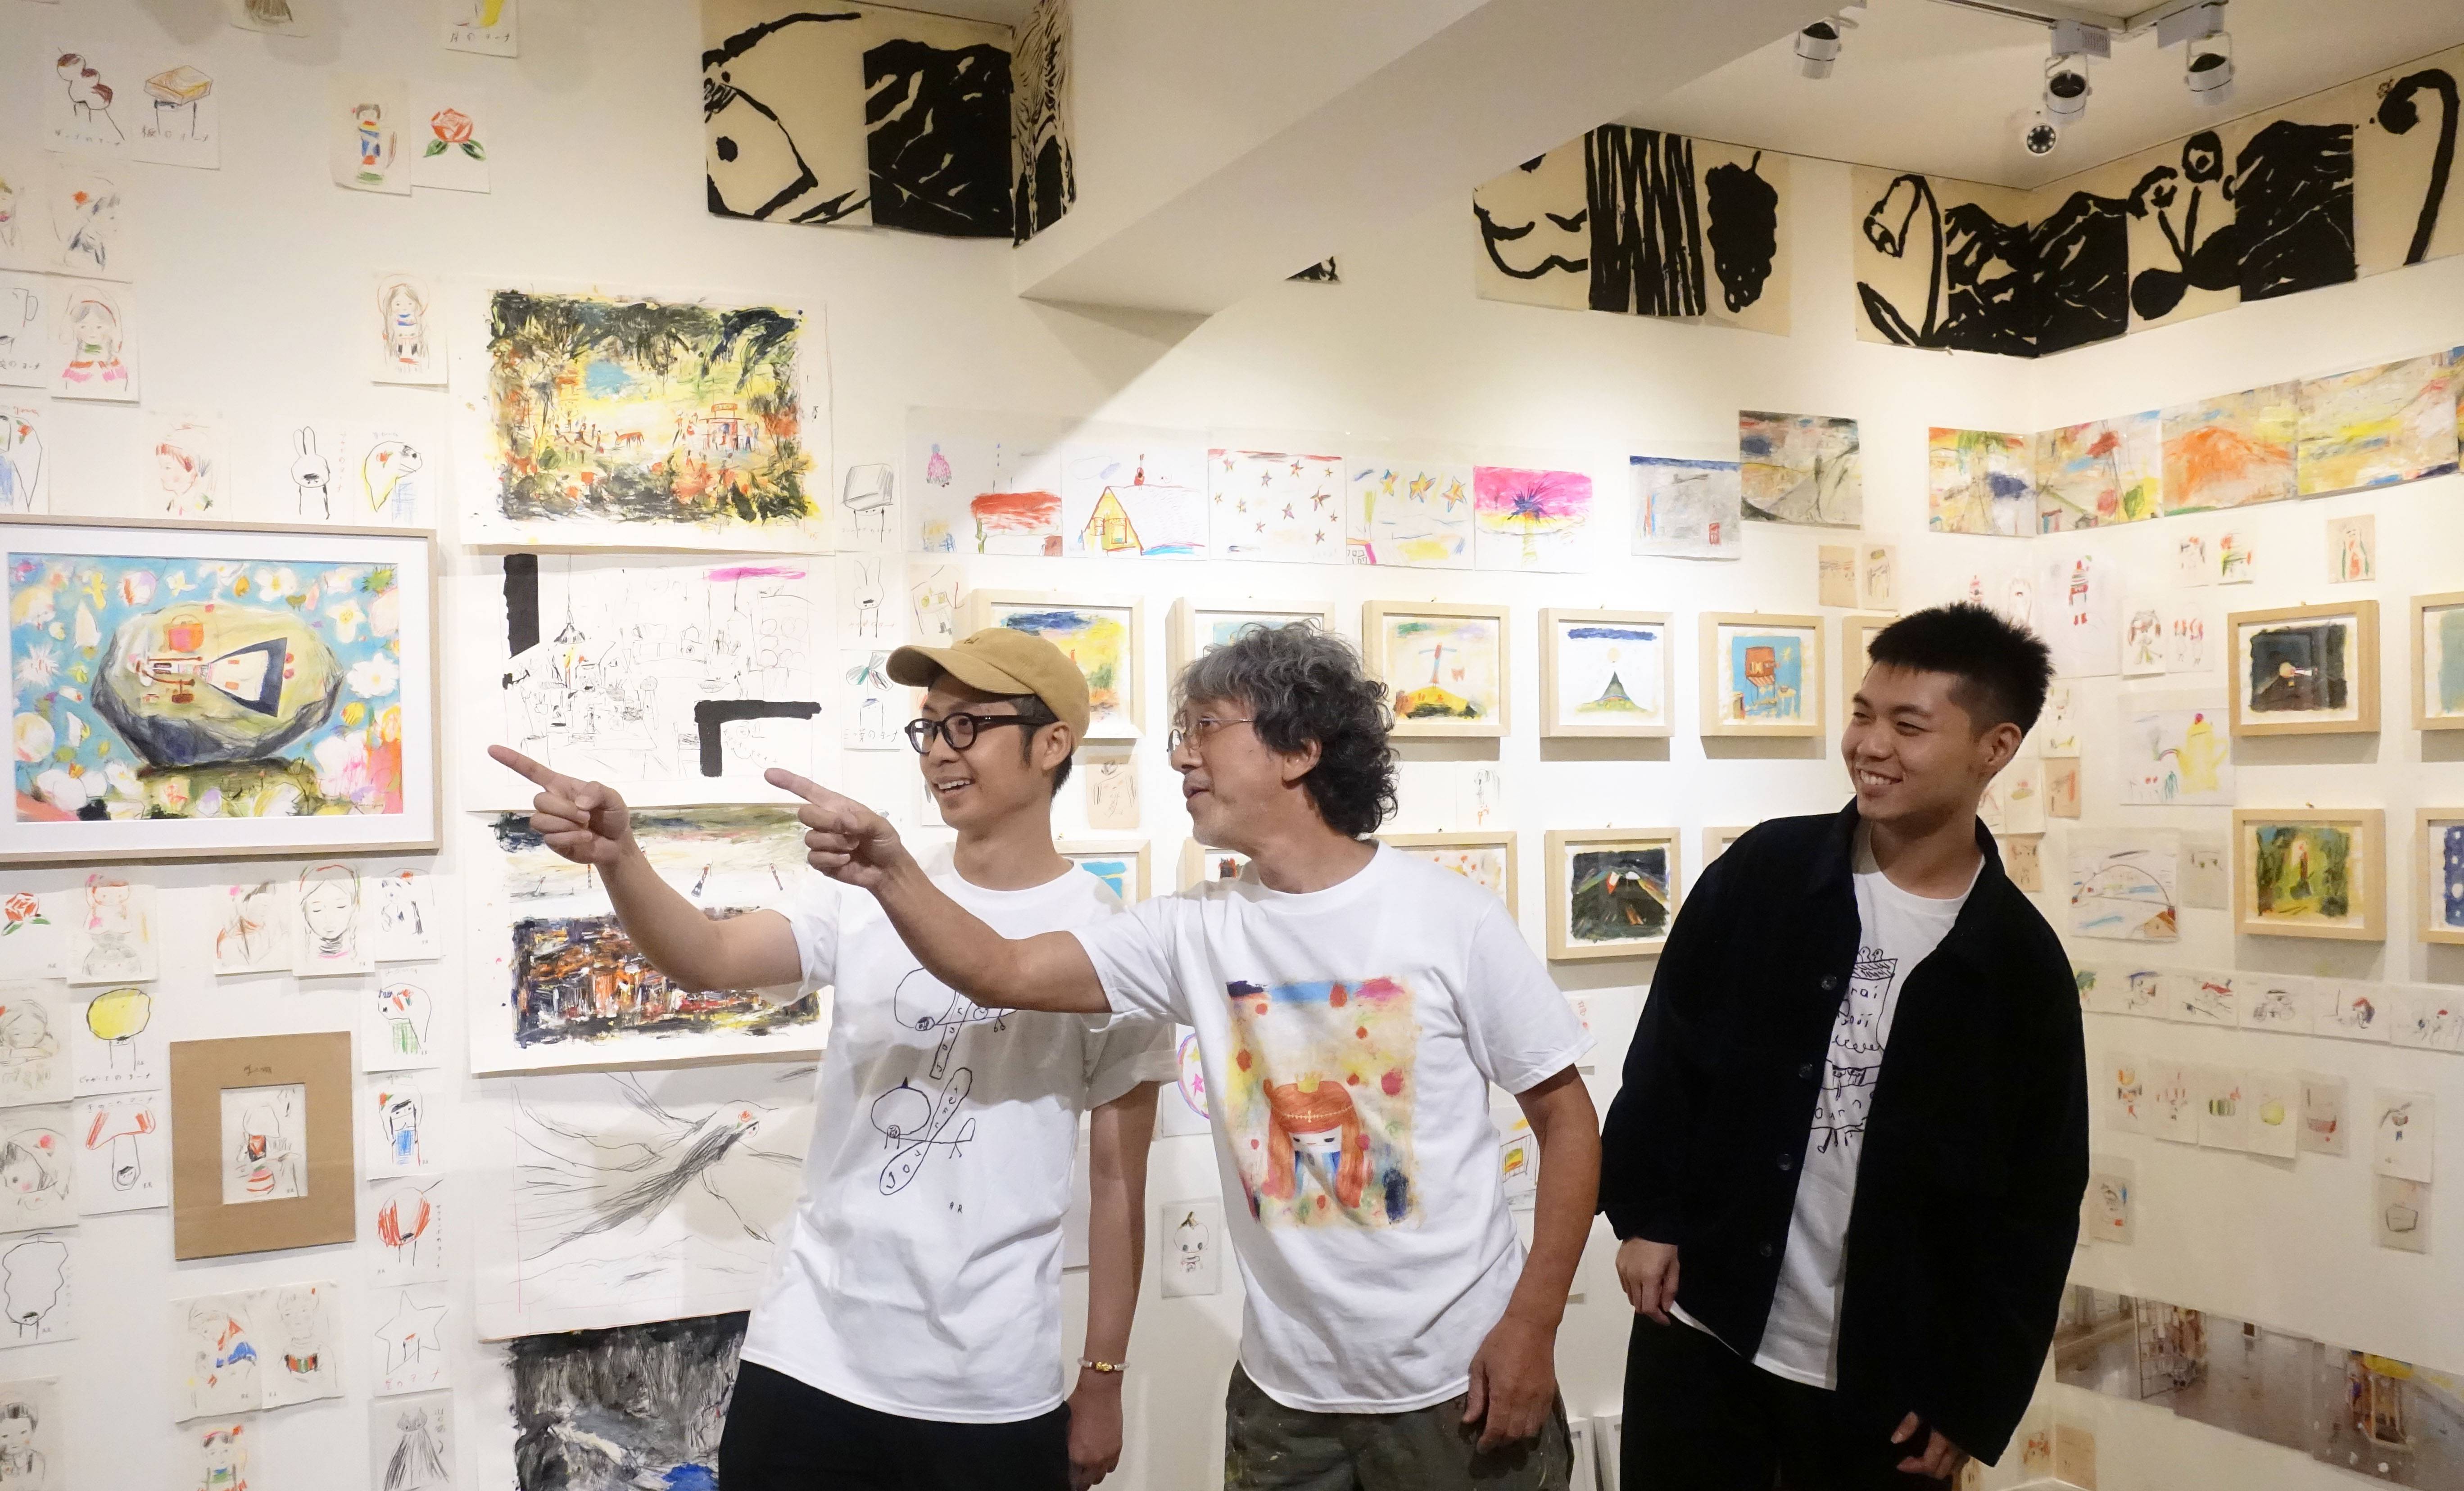 荻達寓見藝術家林彥良(左)與日本插畫繪本藝術家荒井良二先生(中)以及荻達寓見藝術家陳威廷(右)合影。